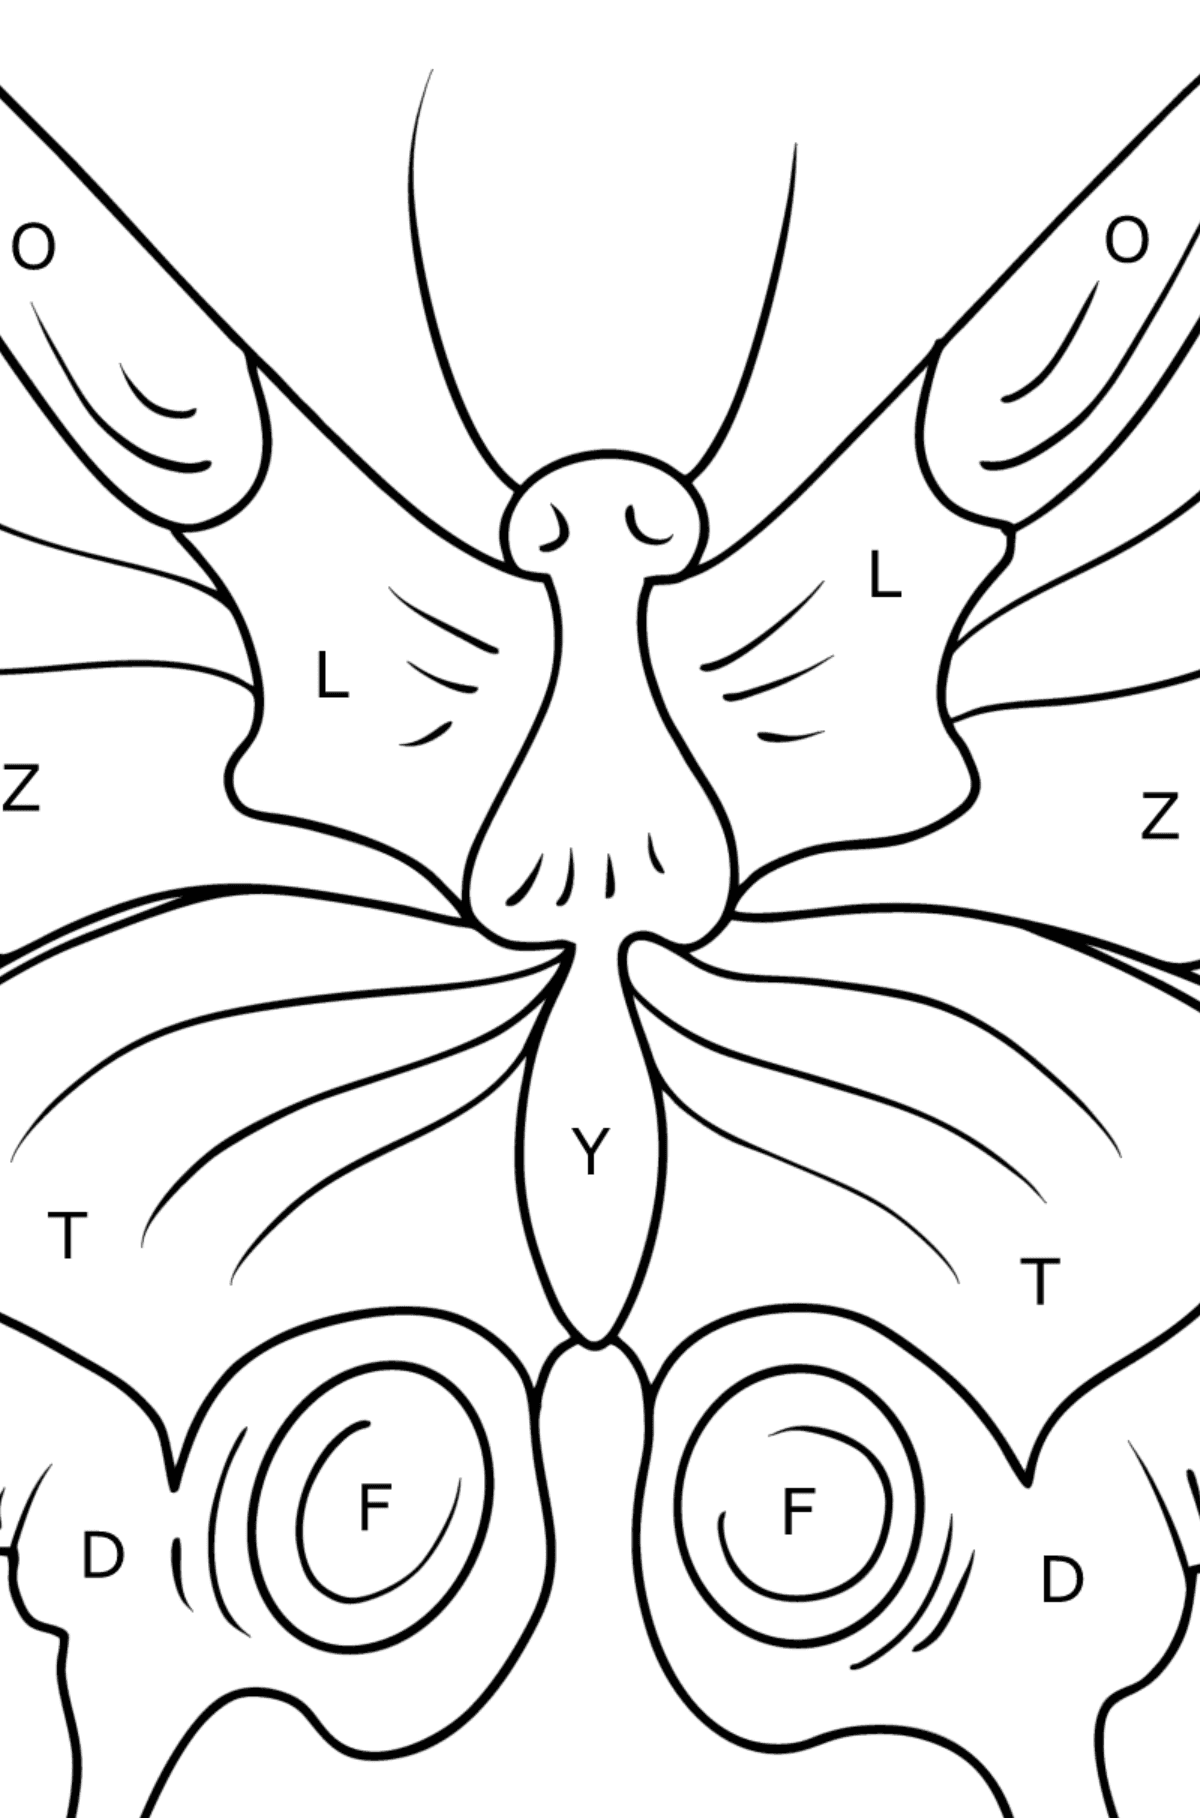 Kleurplaat zwaluwstaartvlinder - Kleuren met letters voor kinderen